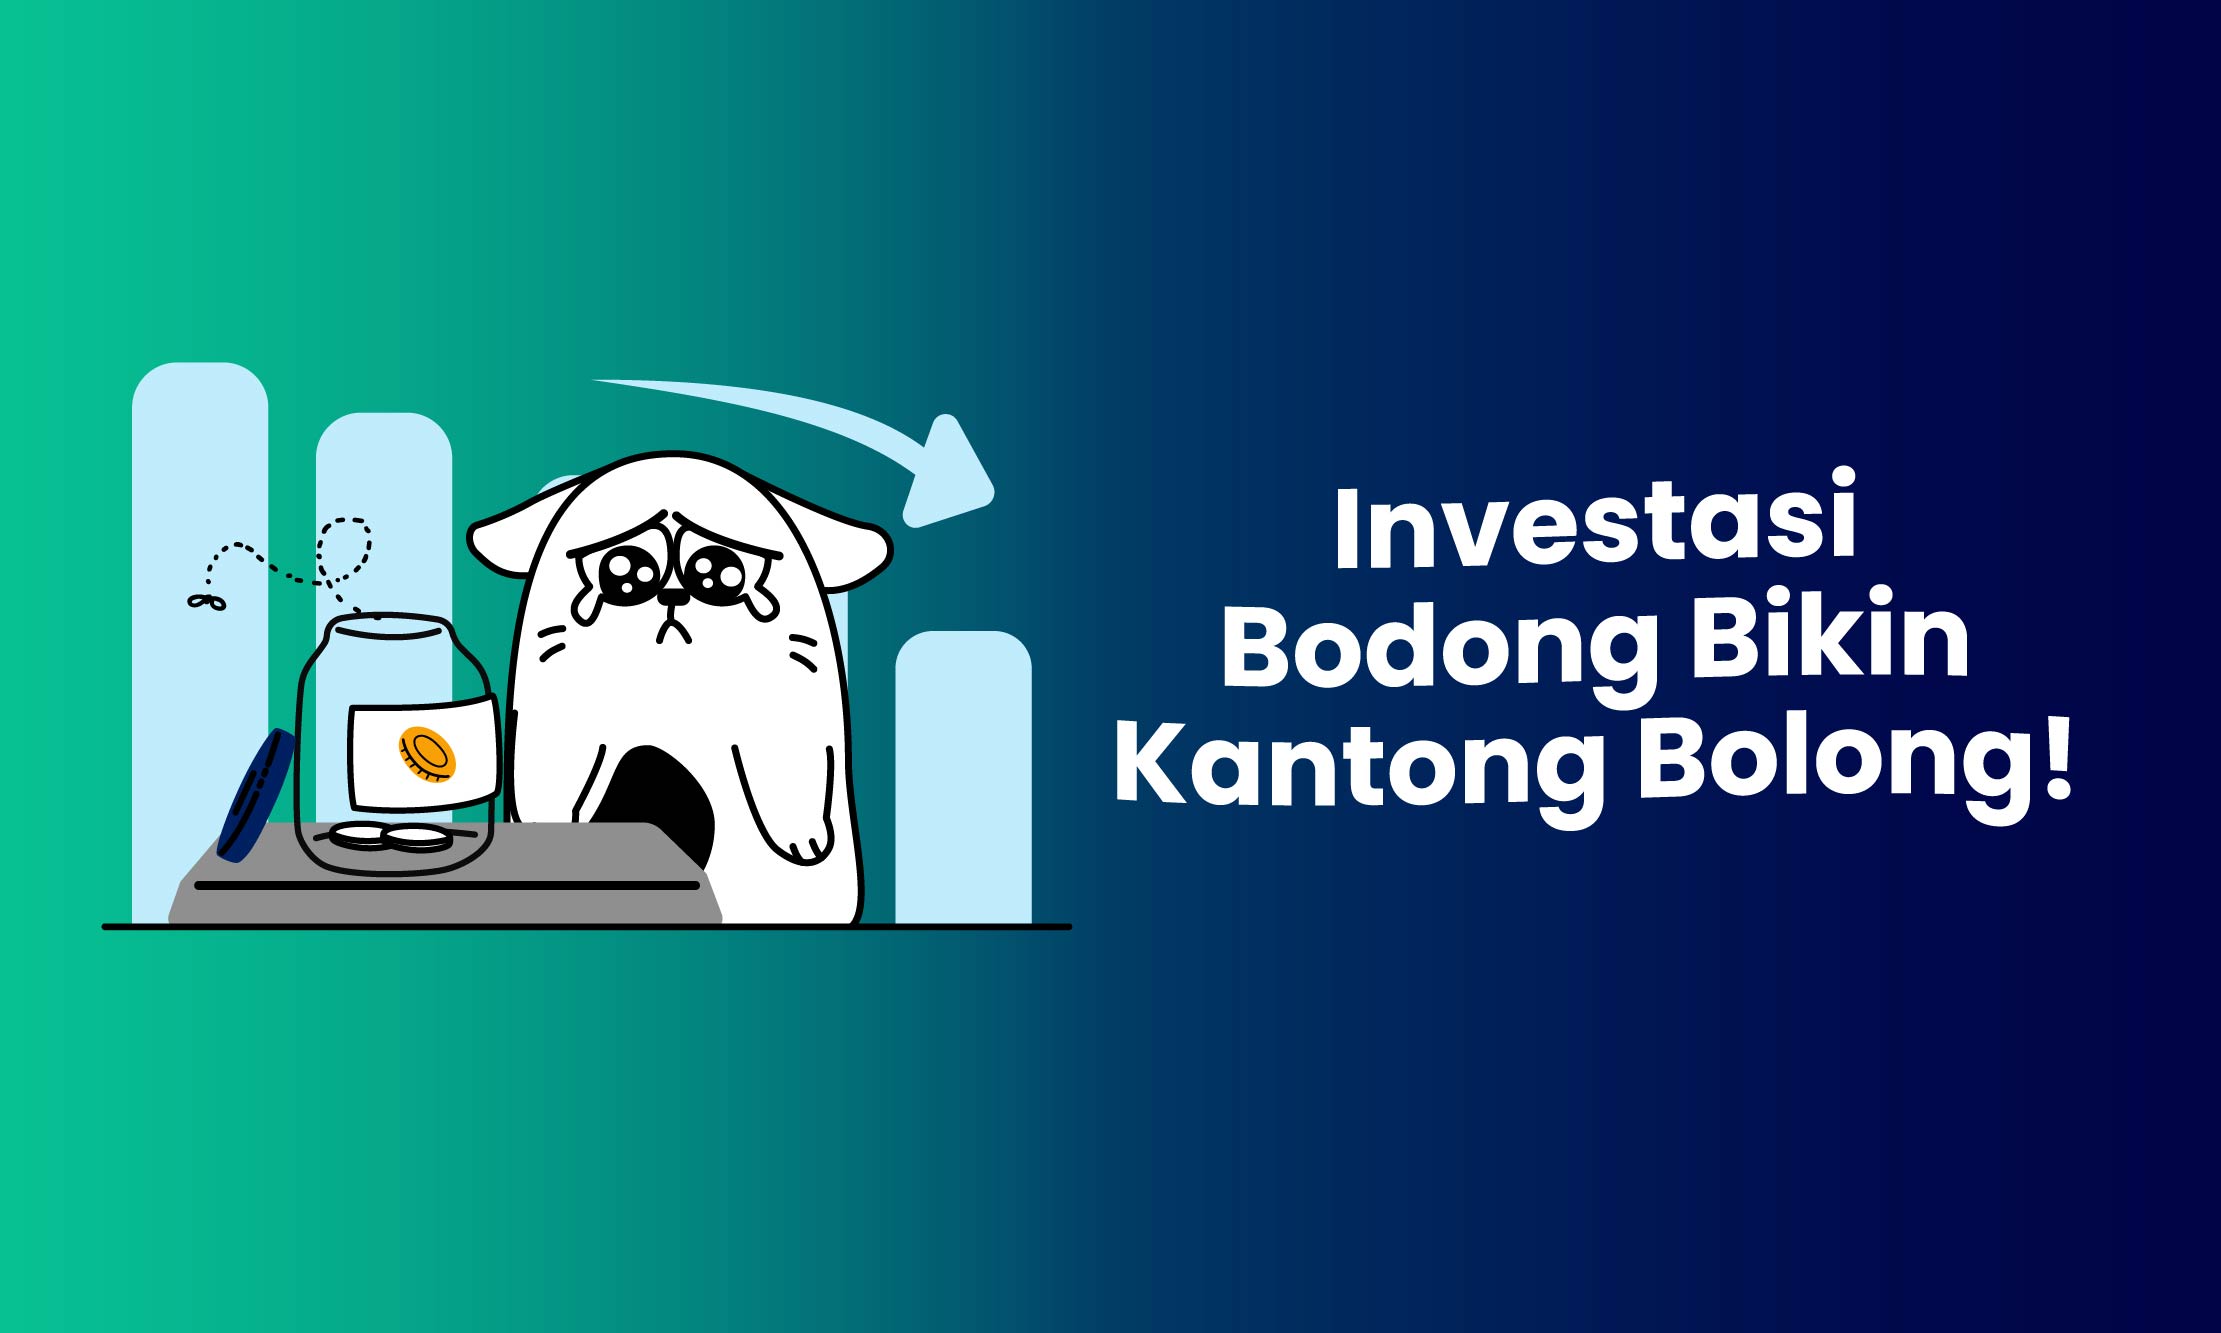 Investasi Bodong Bikin Kantong Bolong!